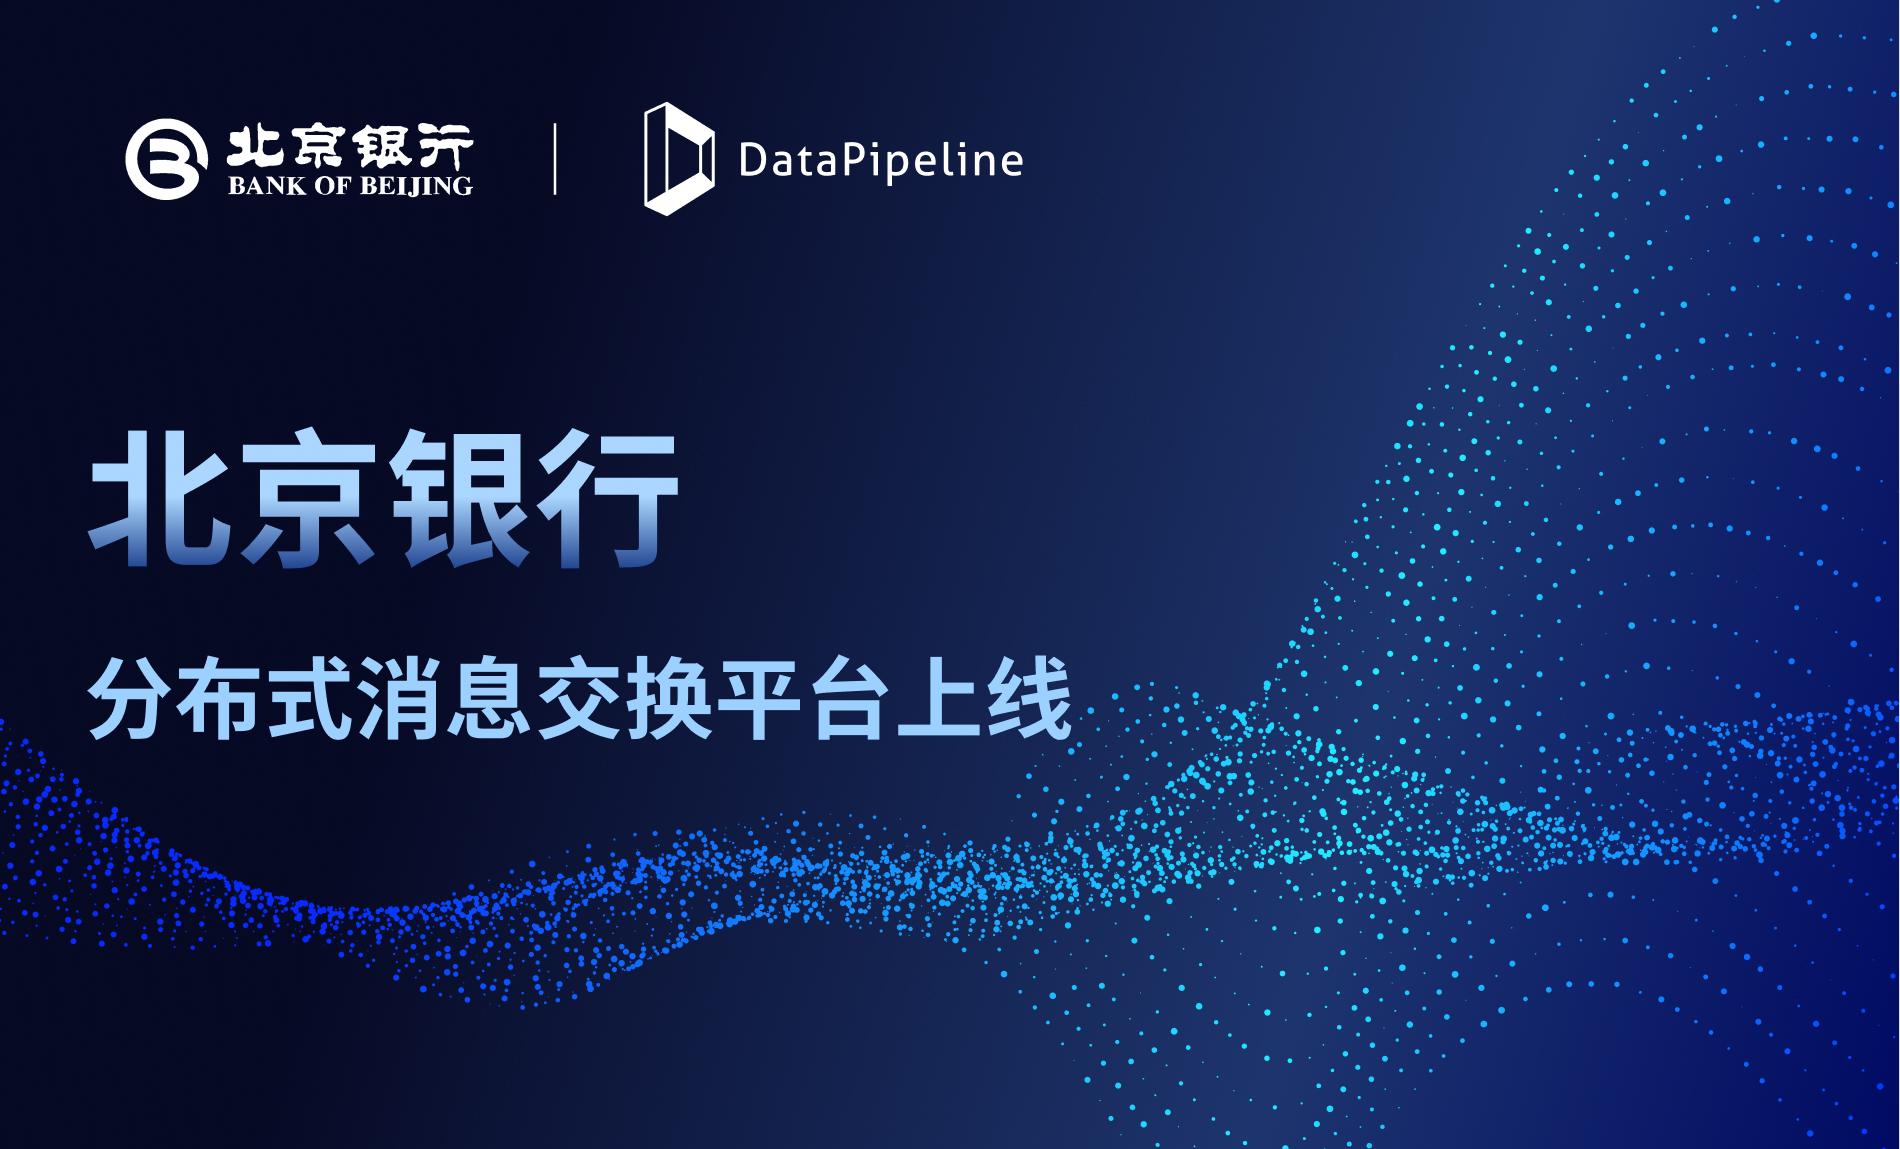 头部城商行的创新步伐：DataPipeline助力北京银行打通数据赋能通道